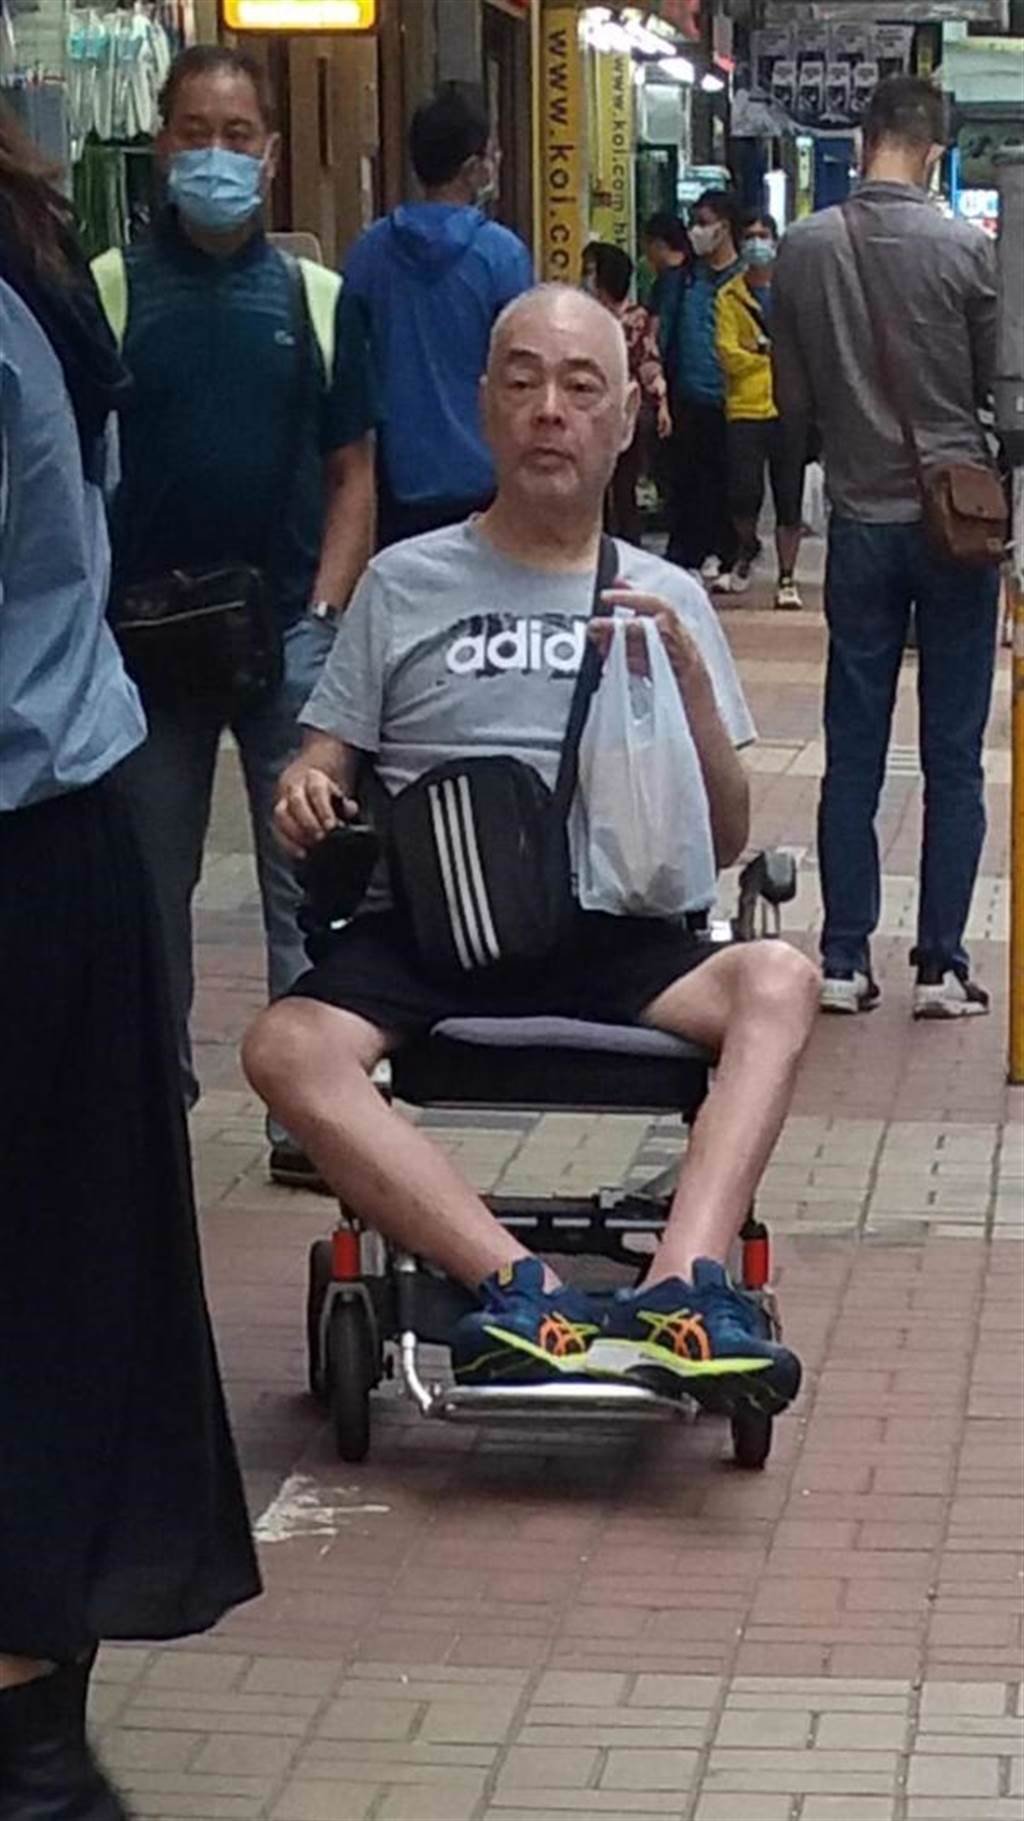 張偉文憔悴坐輪椅暴瘦近照瘋傳。(取自東網)